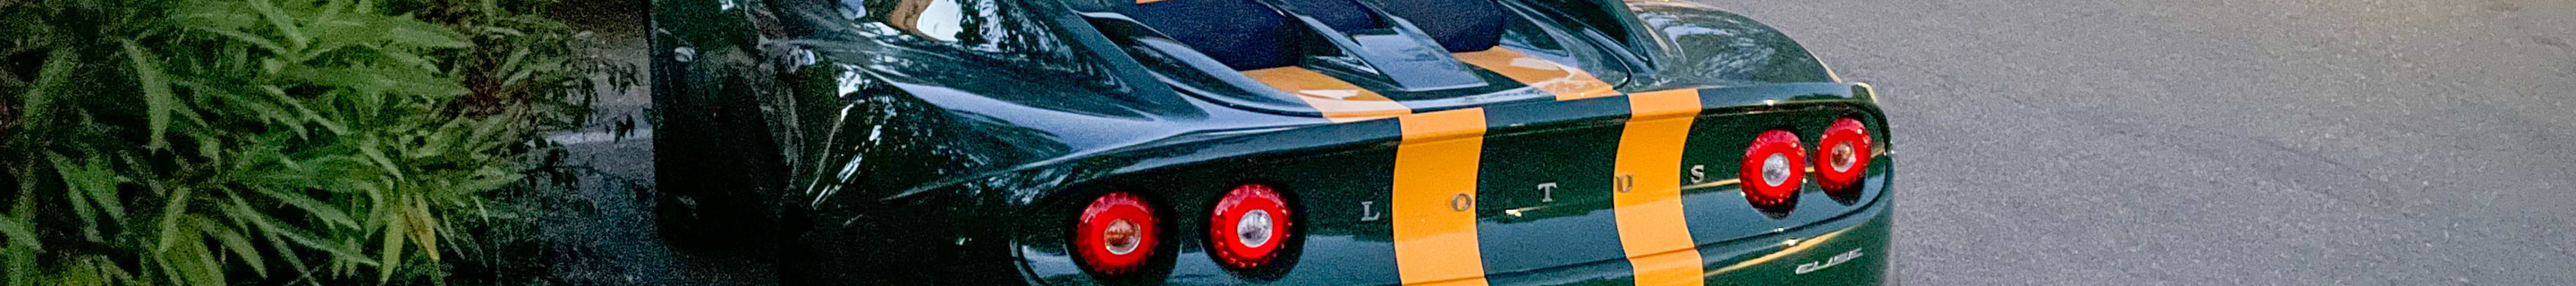 Lotus Elise S3